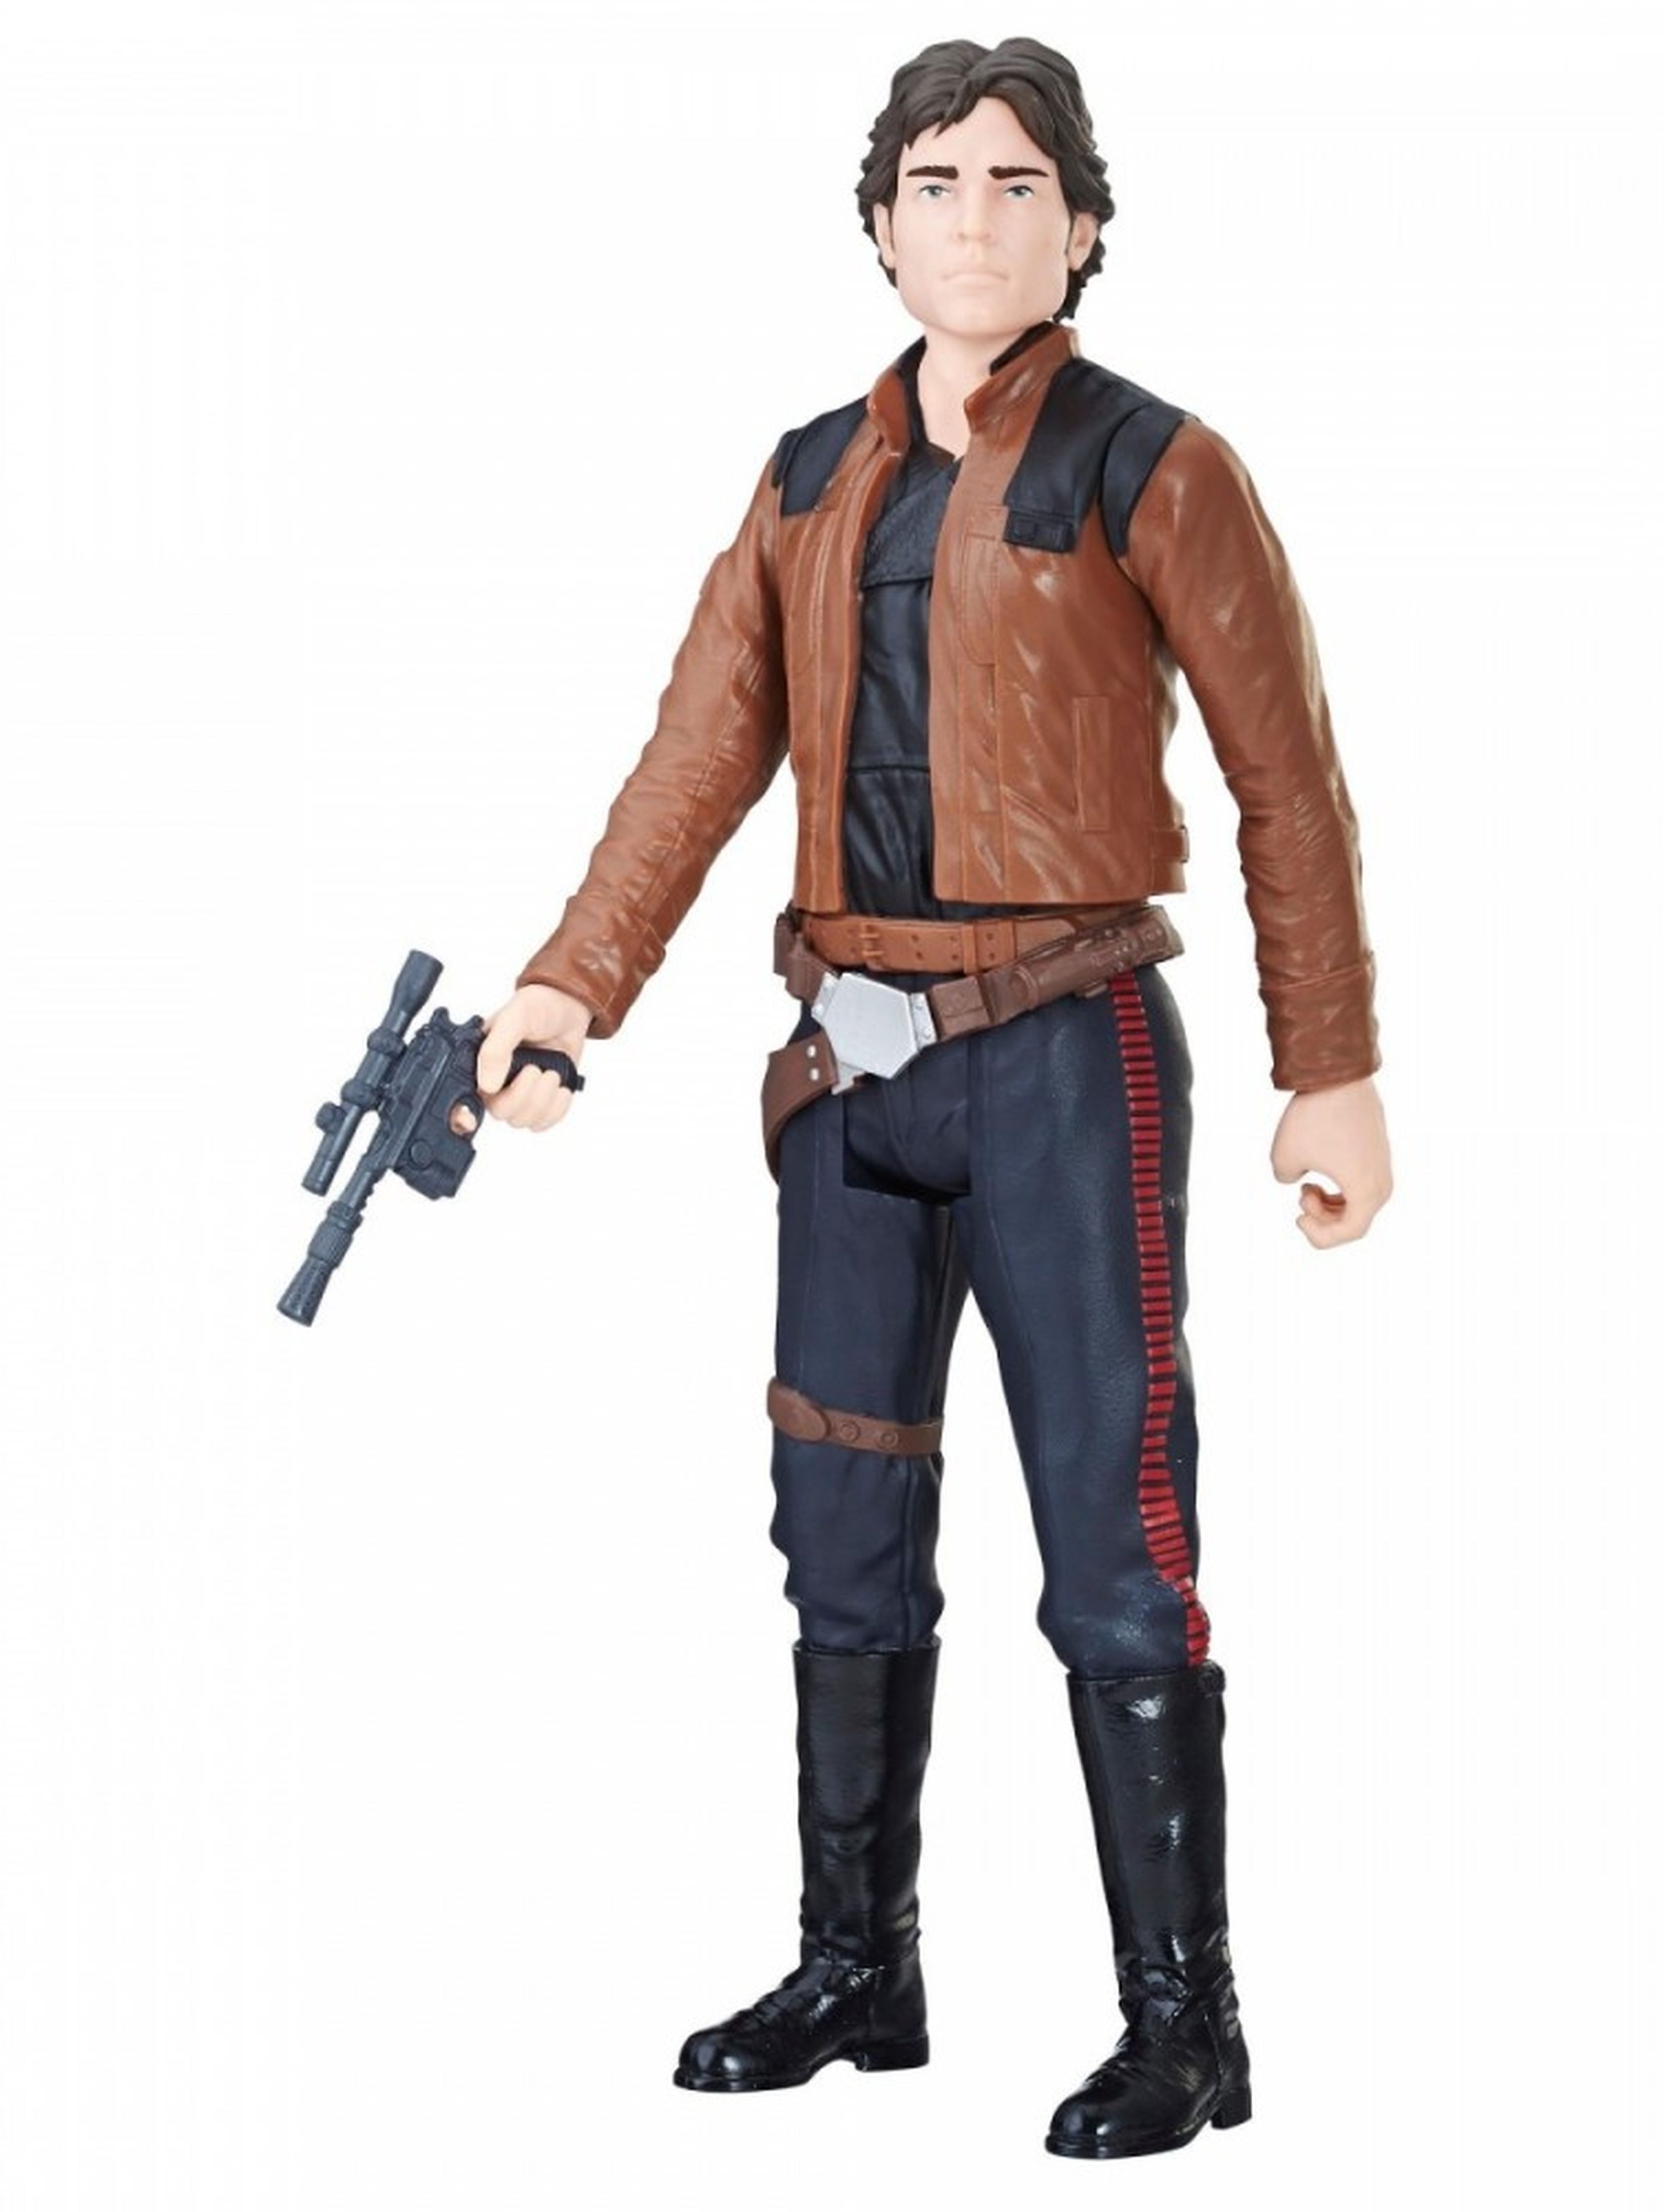 Star Wars Figurka Han Solo